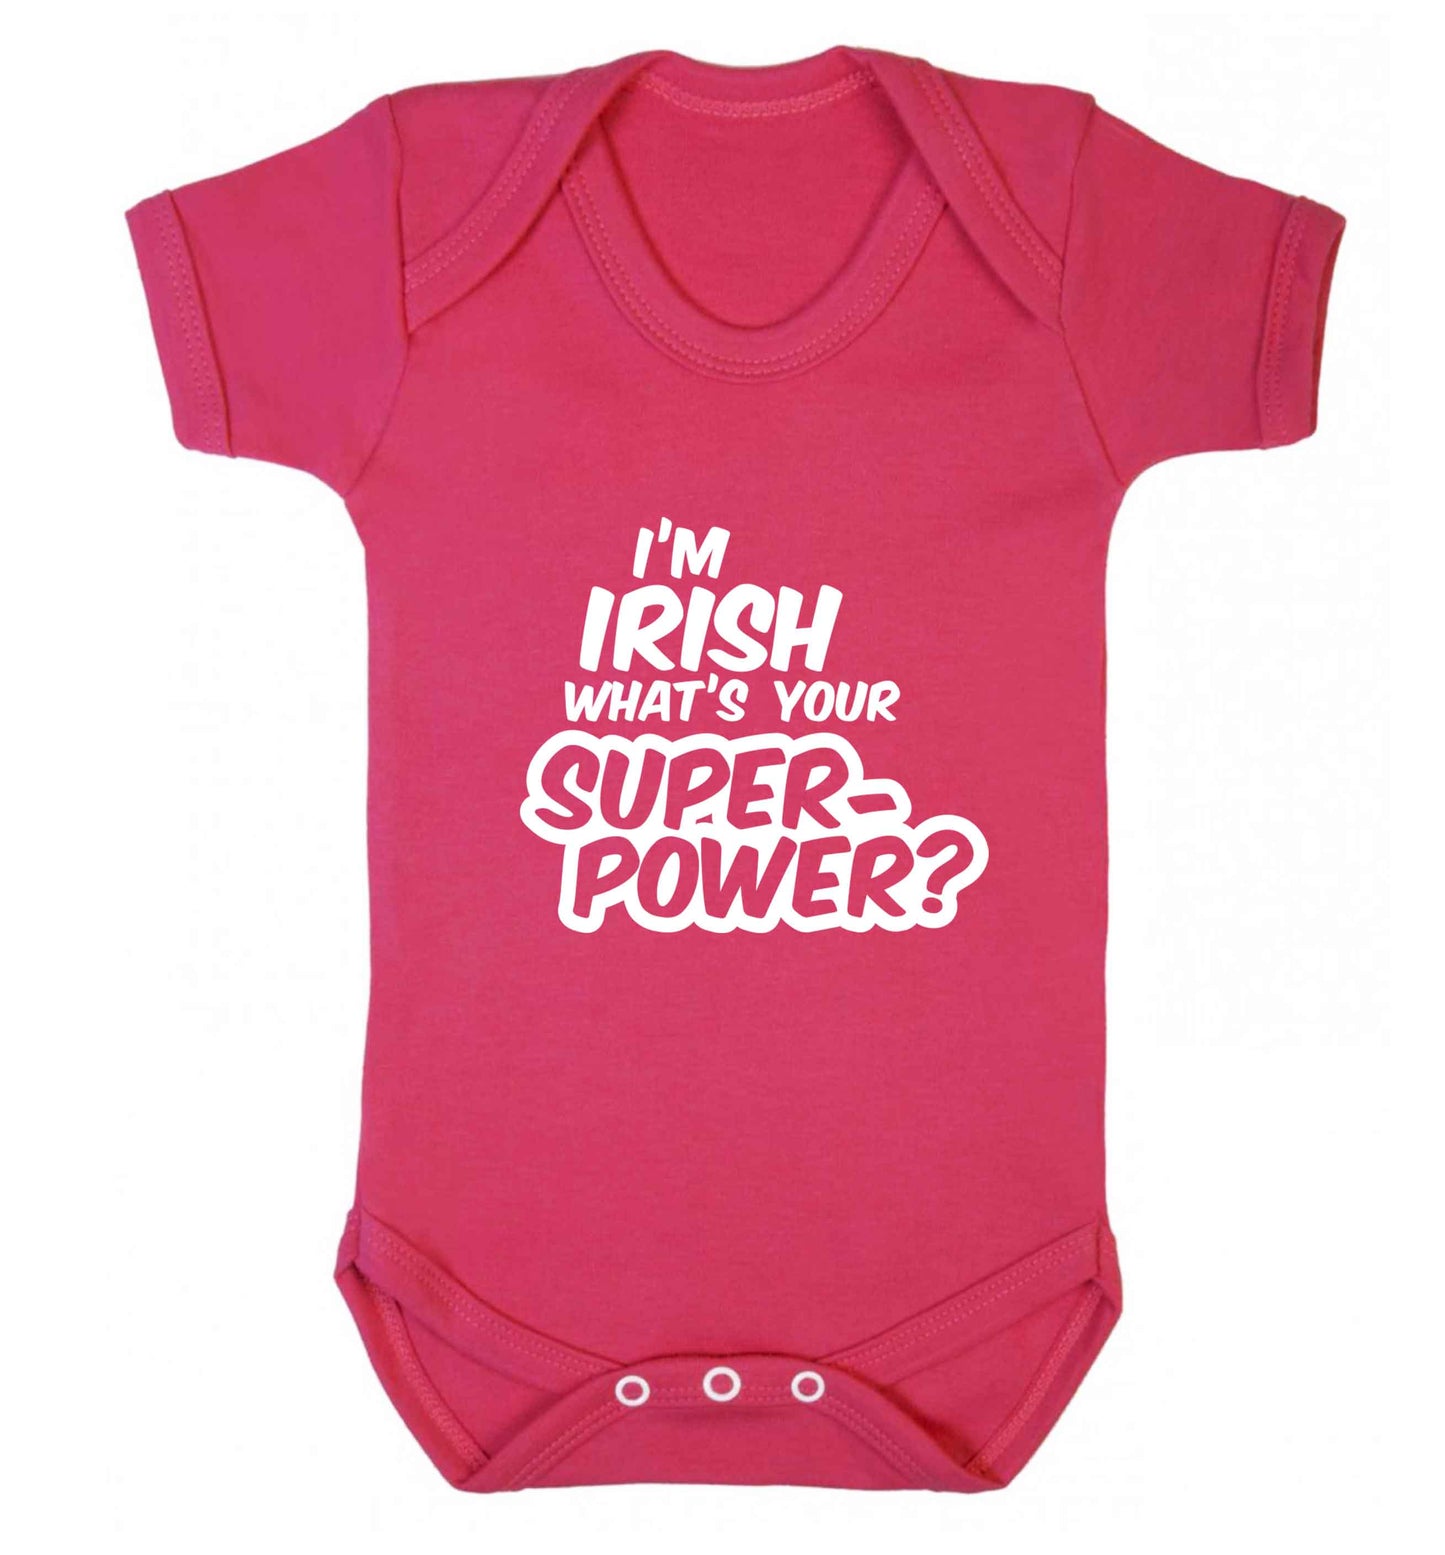 I'm Irish what's your superpower? baby vest dark pink 18-24 months